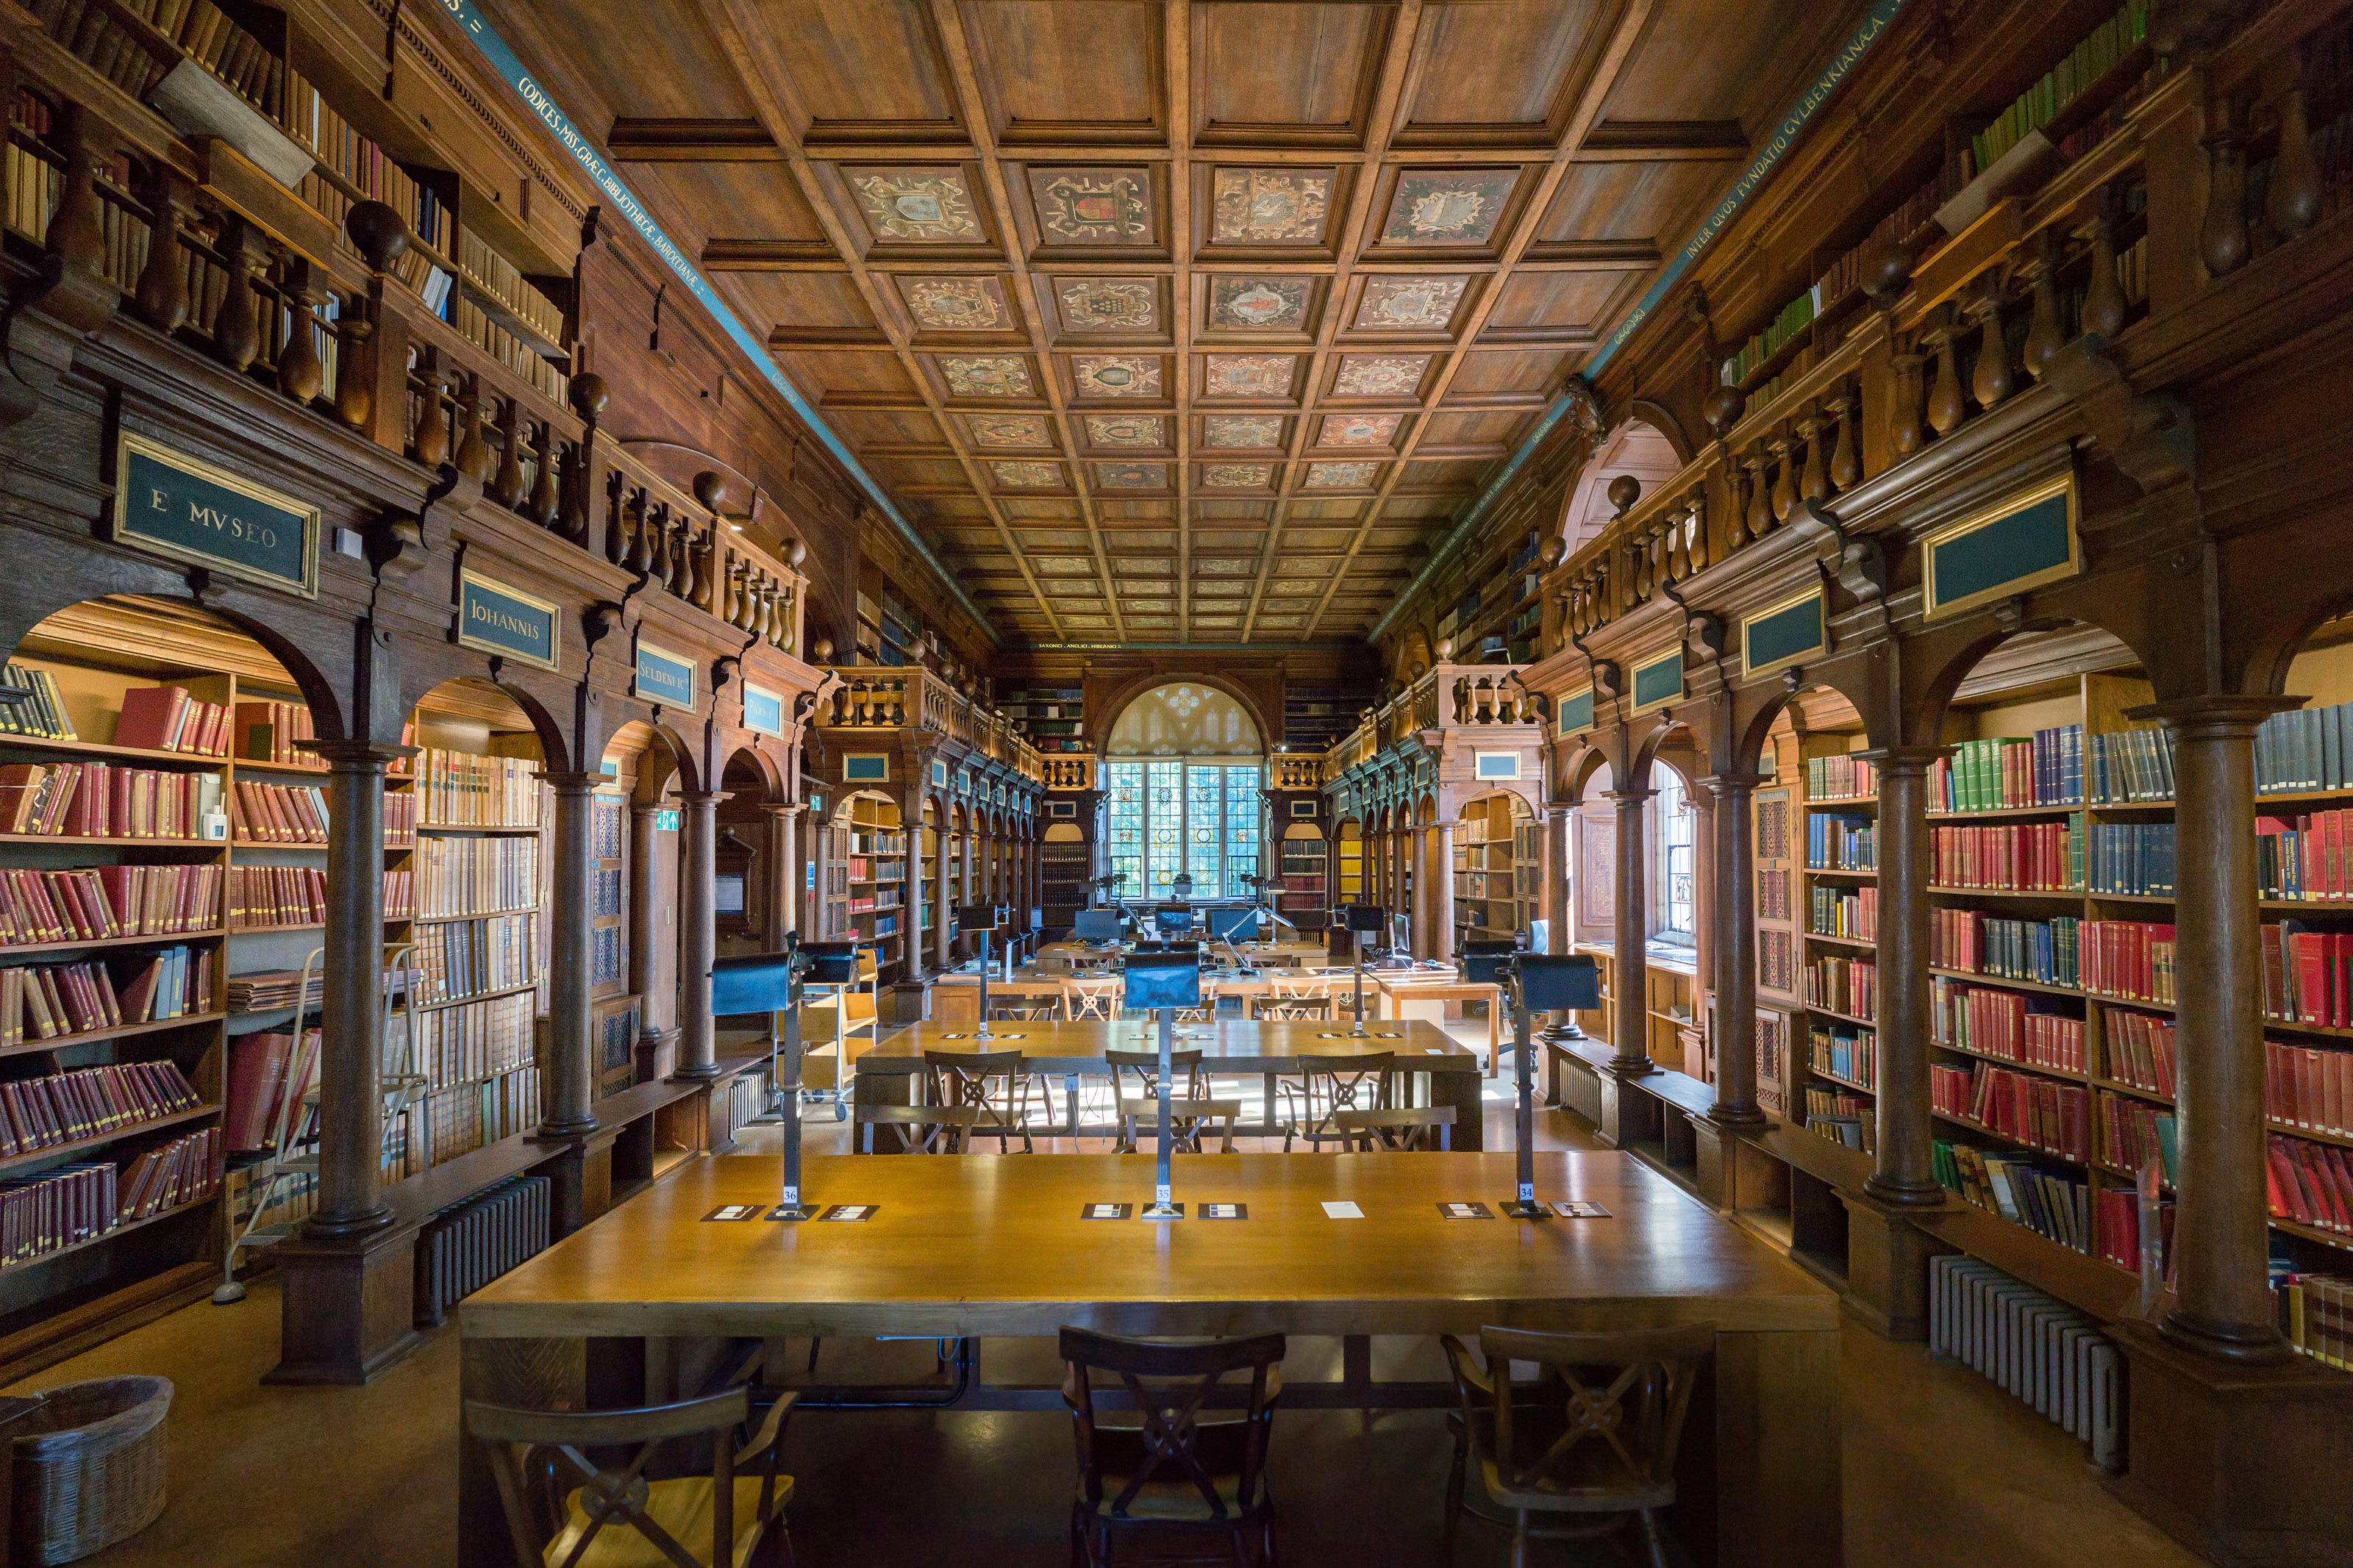 Library rld. Бодлианская библиотека Оксфорд. Оксфорд университет библиотека. Библиотека (Bodleian Library) Оксфорда. Бодлианская библиотека Оксфордского университета (Оксфорд, 1602).